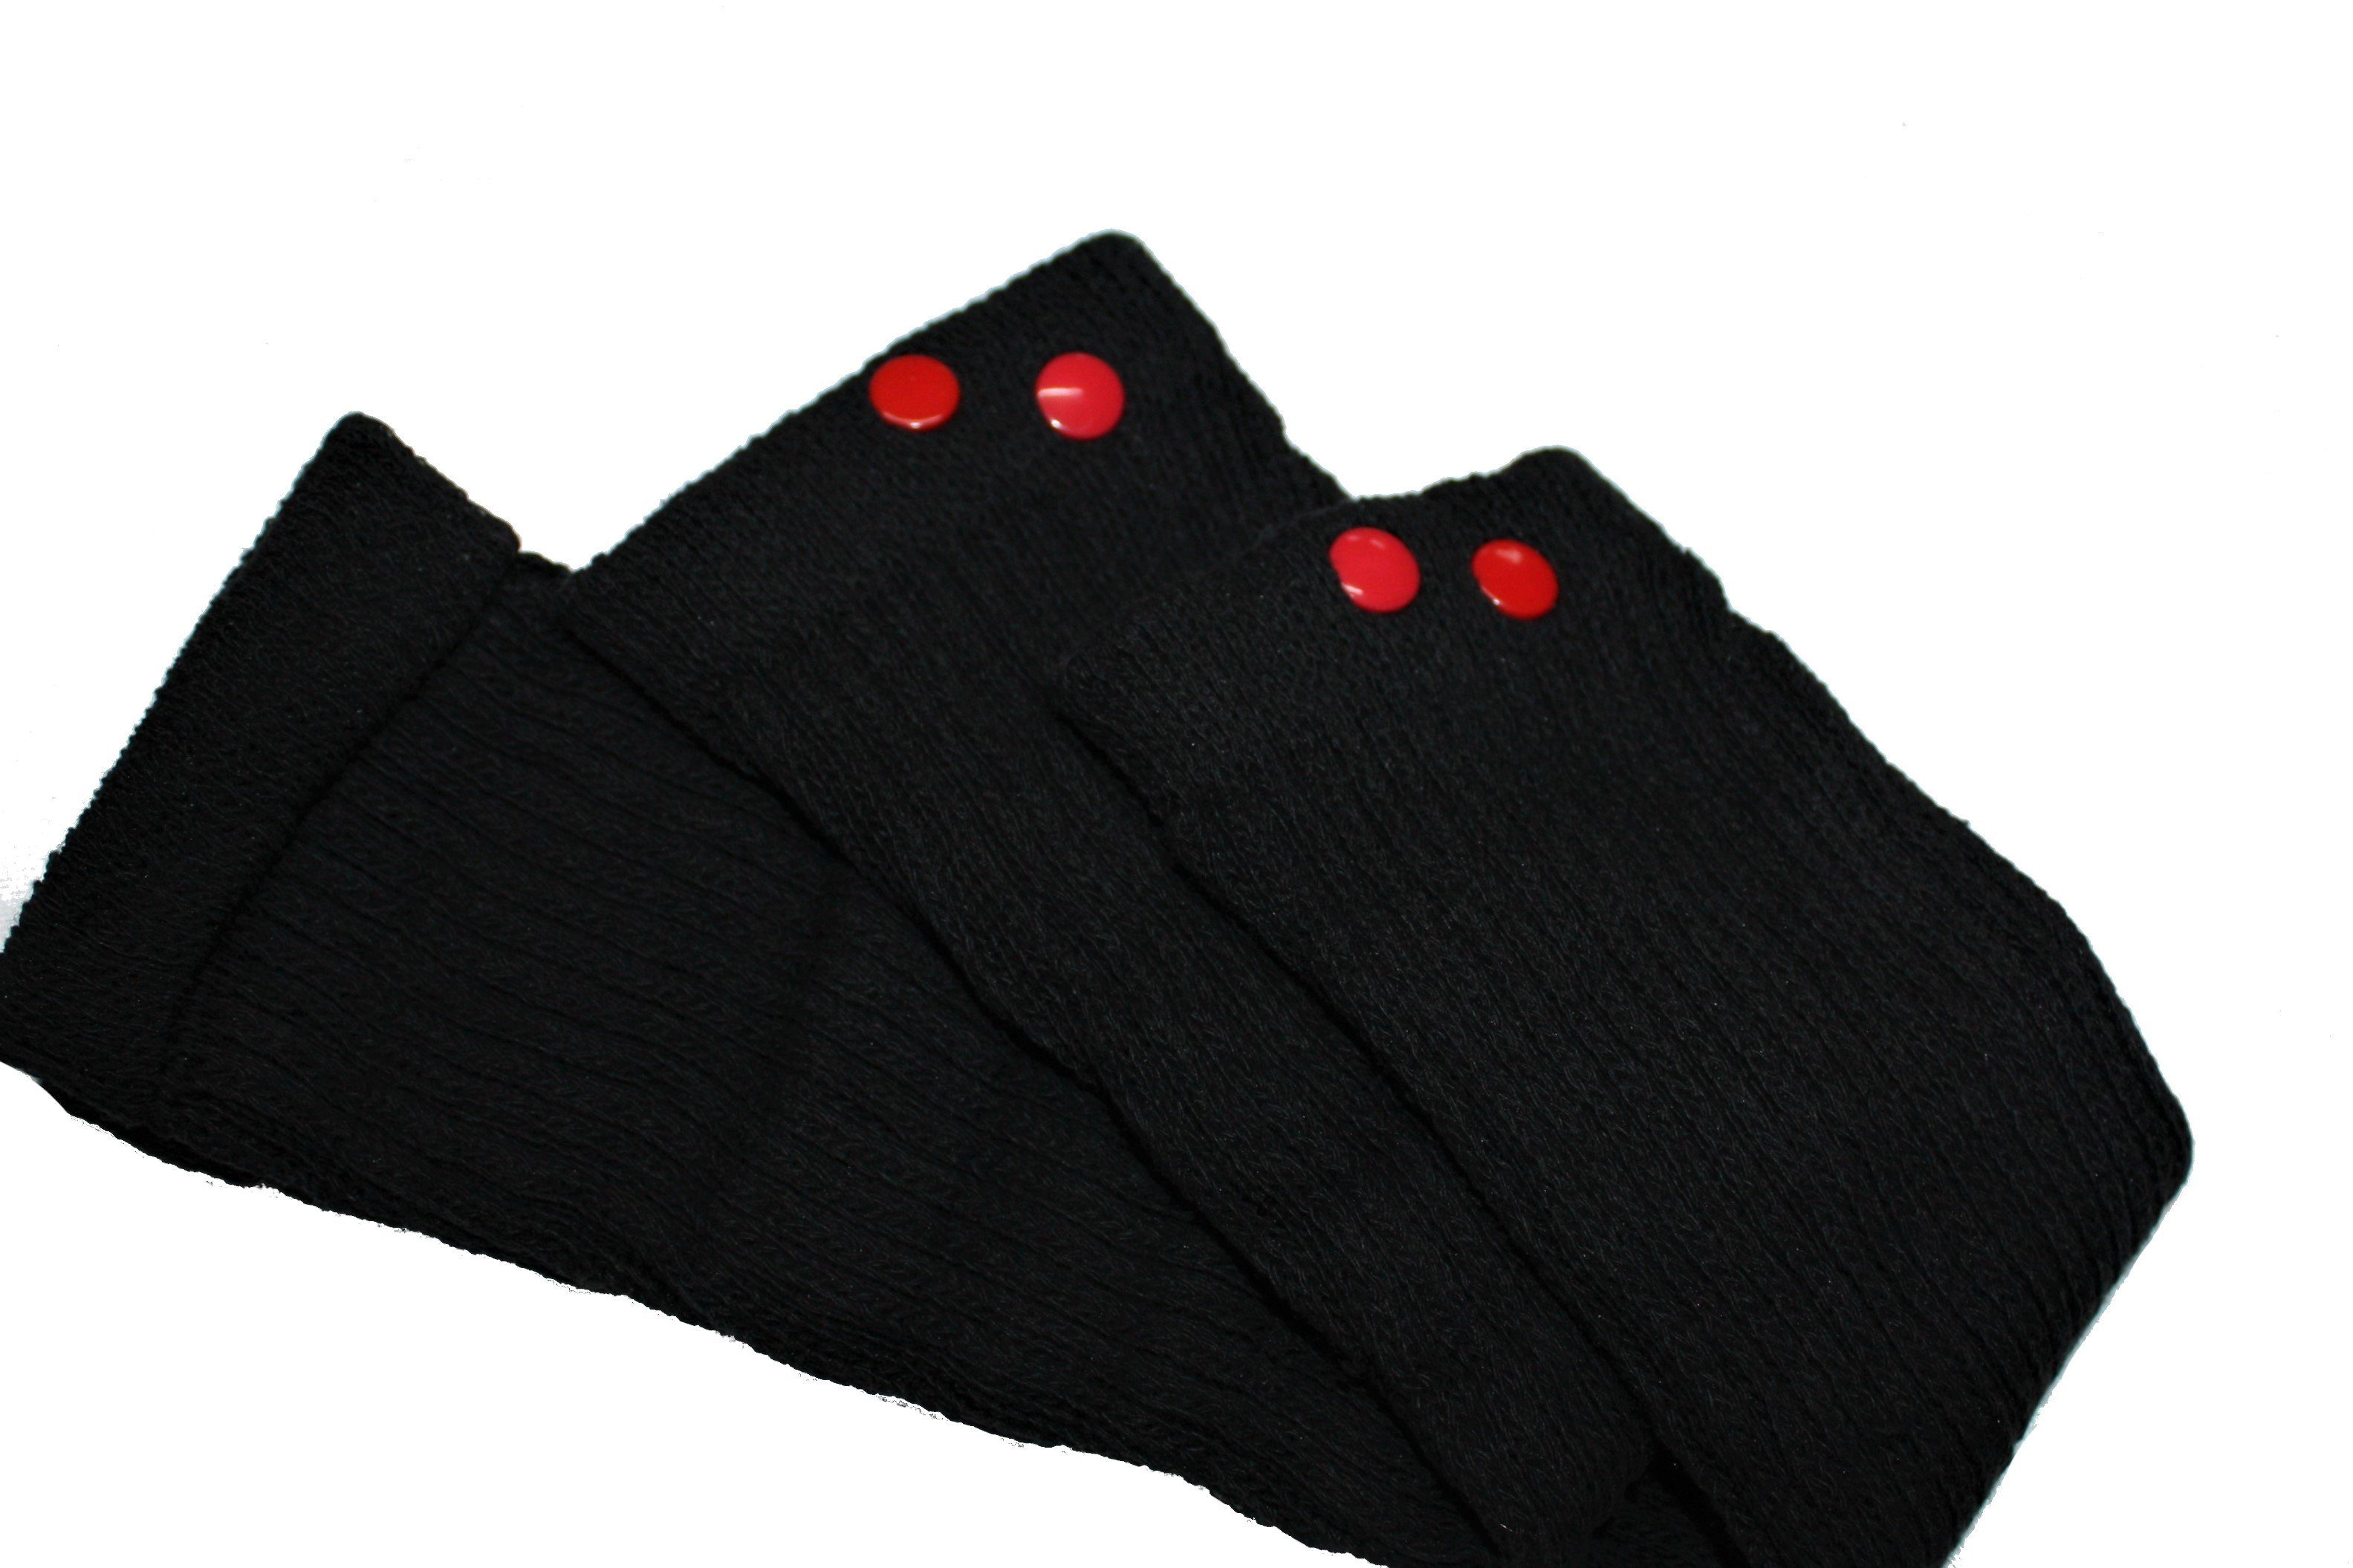 Schwarz design Bunt Nieten Rot mit dunkle Beinstulpen